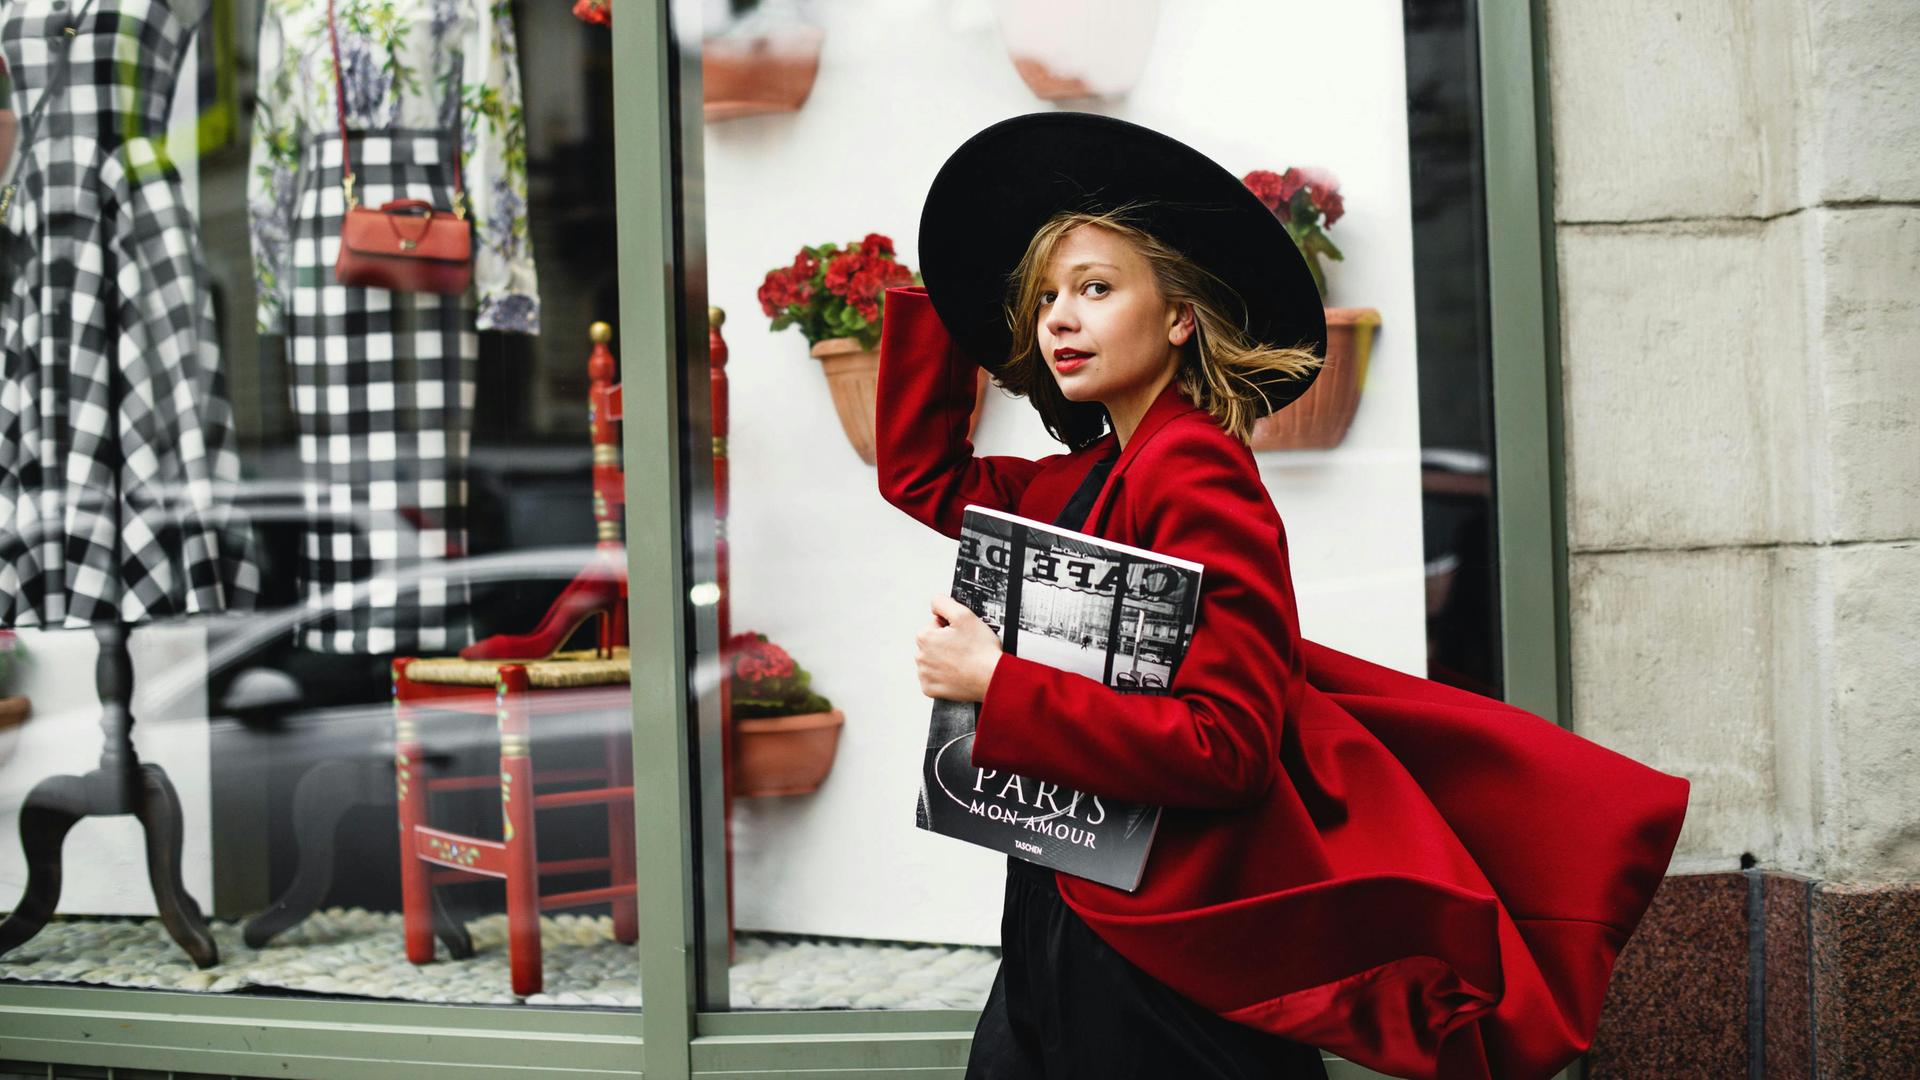 Eine junge Frau mit großem, schwarzen Hut und wehendem, roten Mantel geht an einem Pariser Geschäft vorbei und schaut dabei in die Kamera.